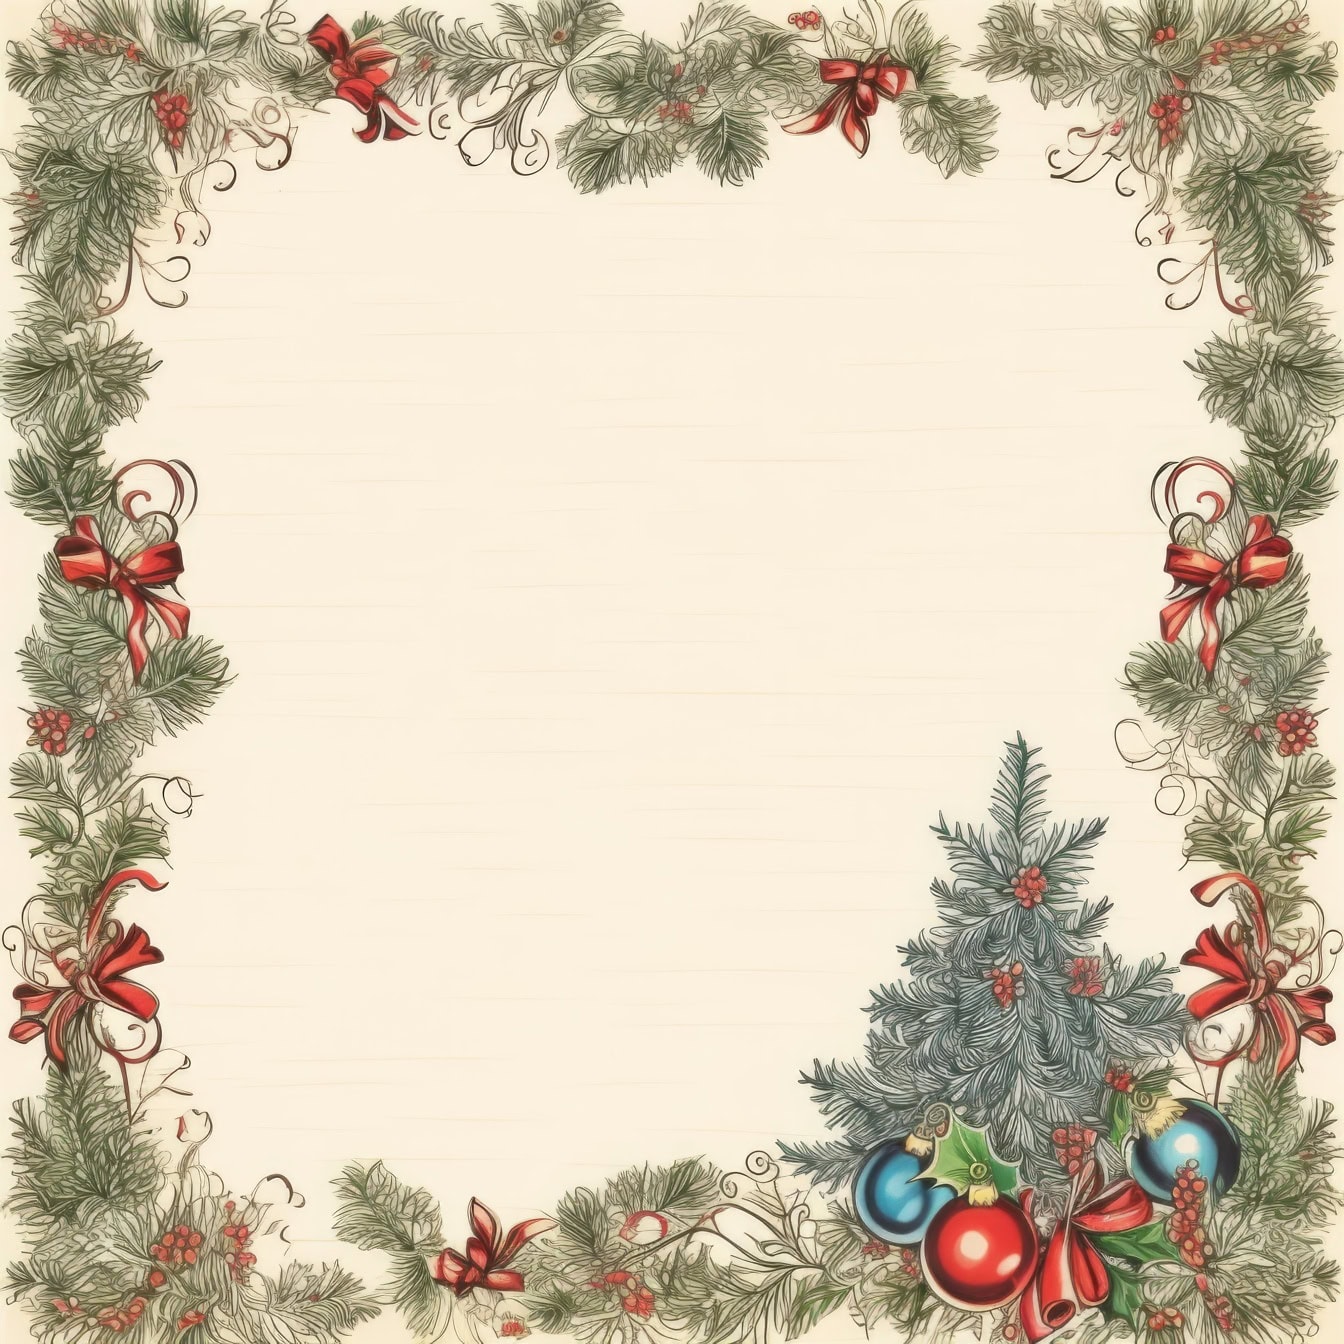 Karácsonyi képeslap sablon karácsonyfával, díszekkel és masnikkal